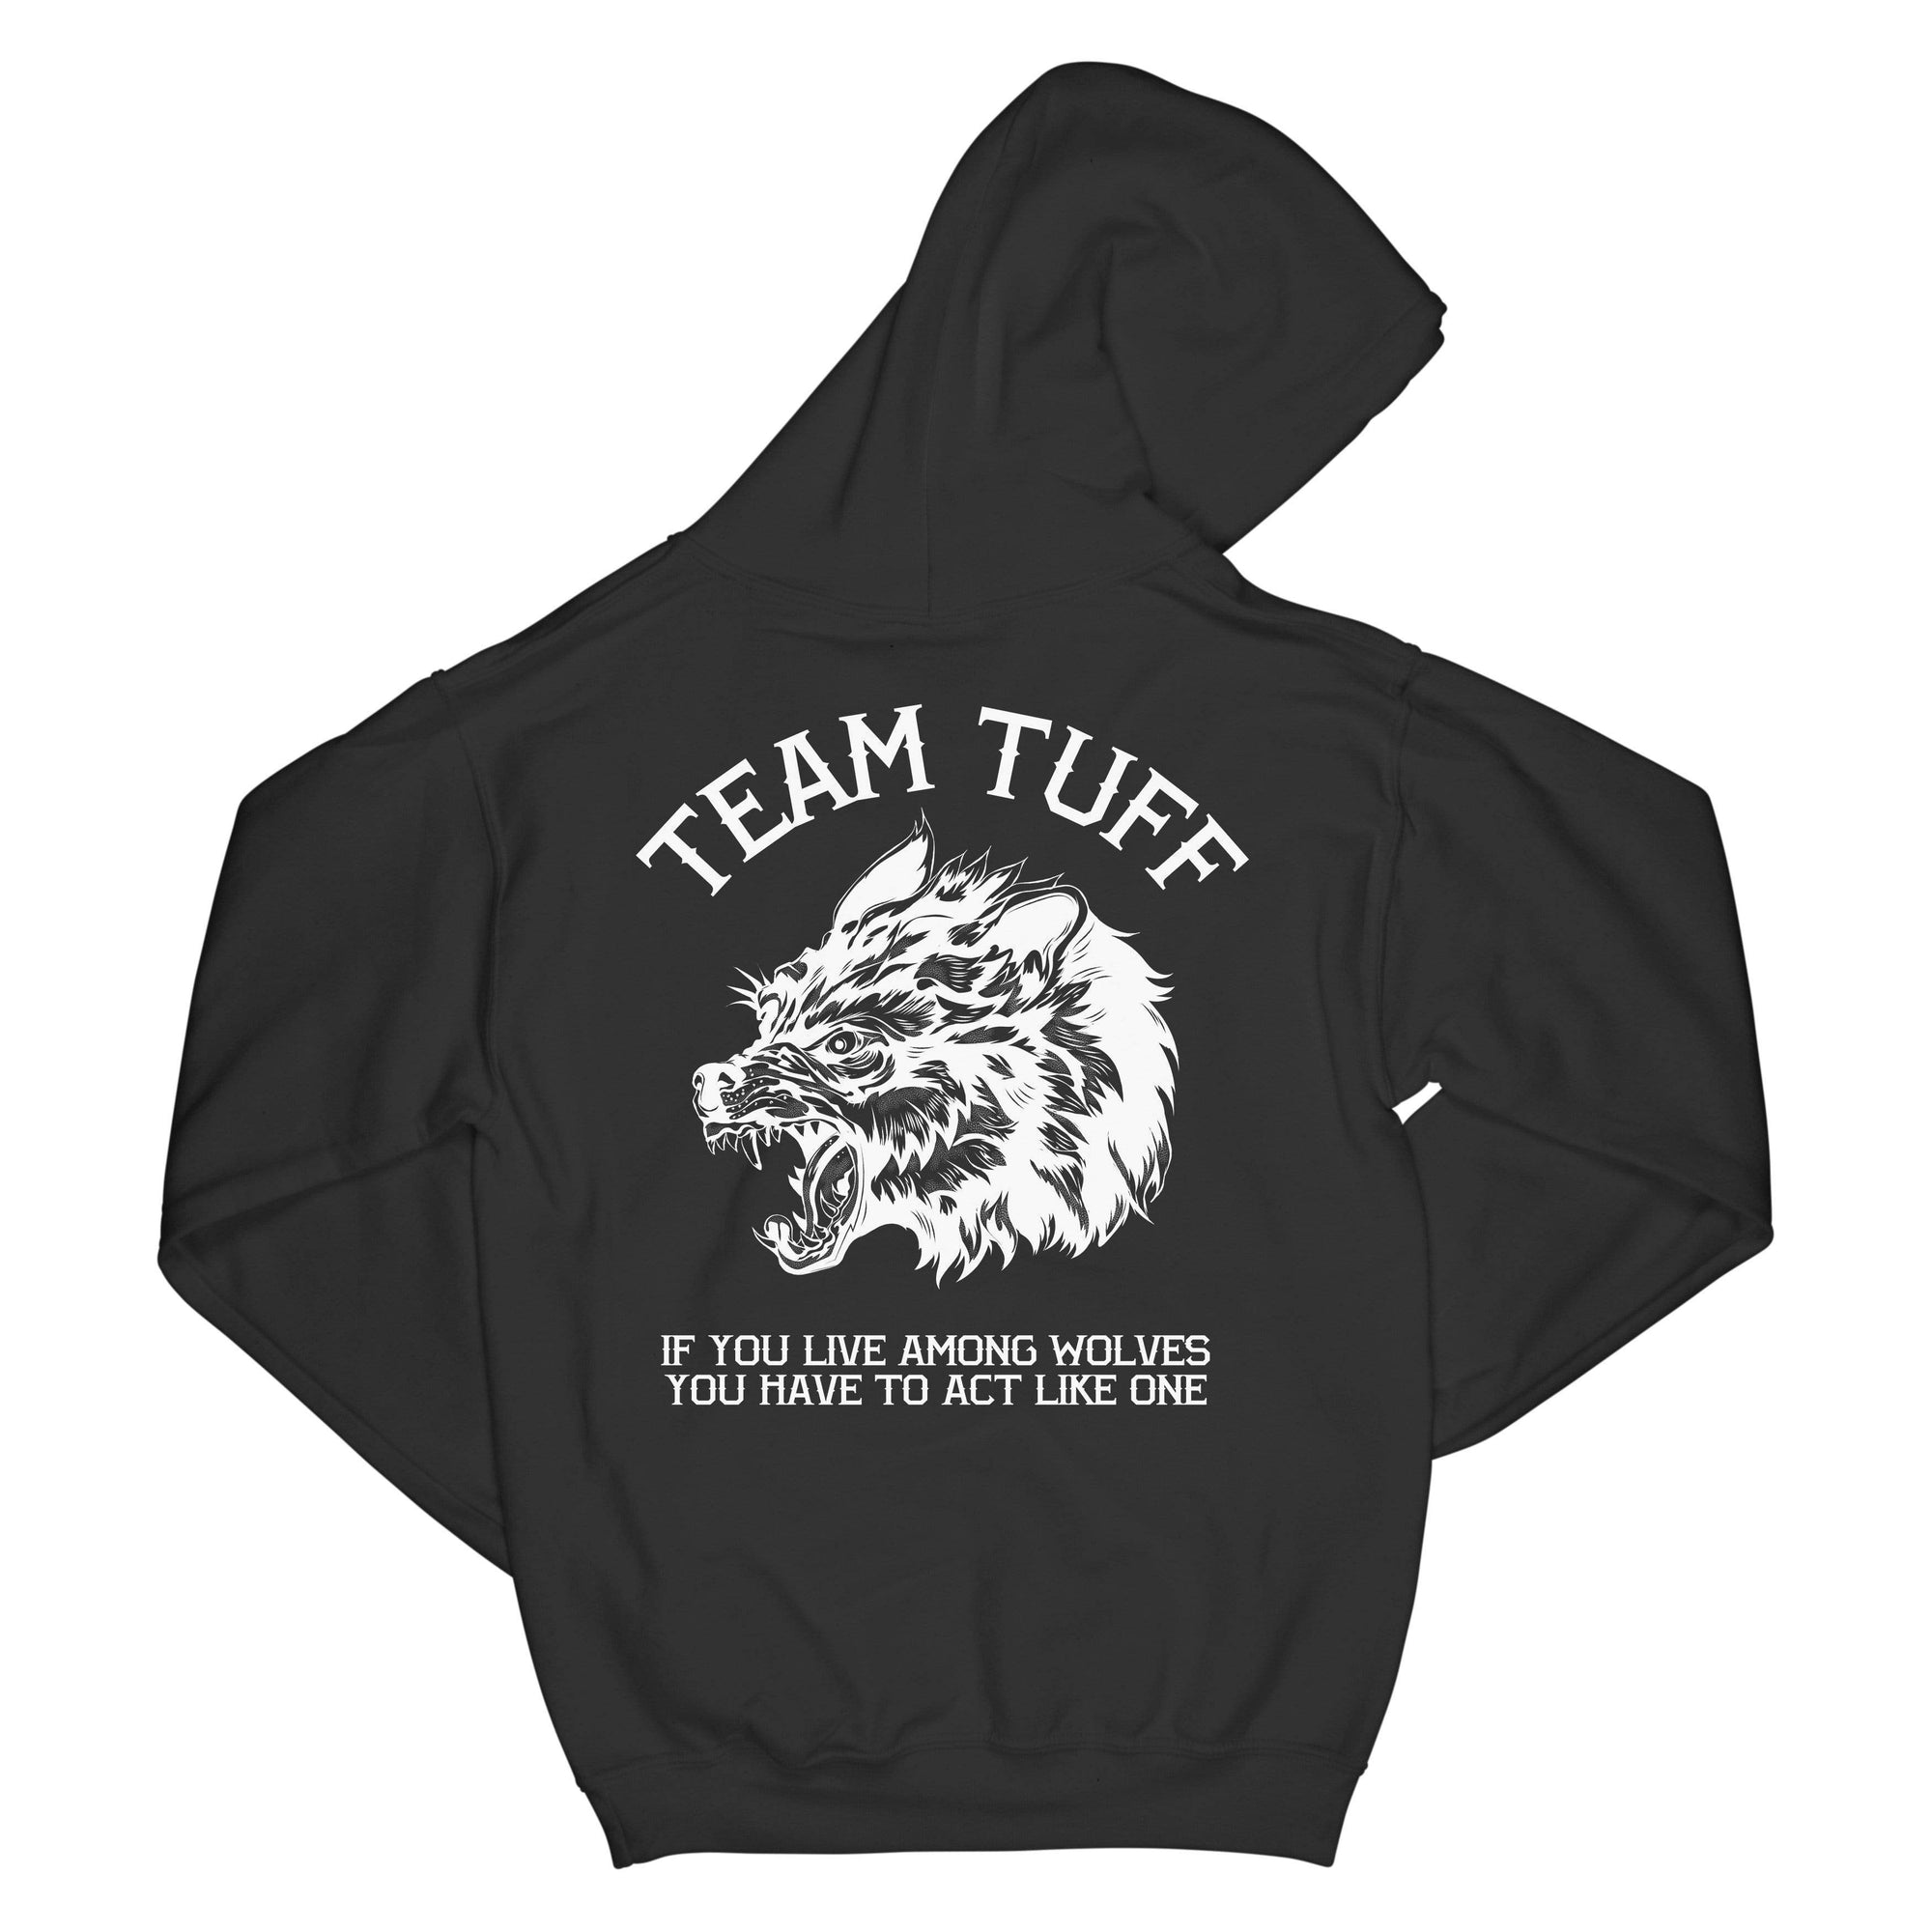 Team TUFF Wolves Club Hooded Sweatshirt XS / Black TuffWraps.com